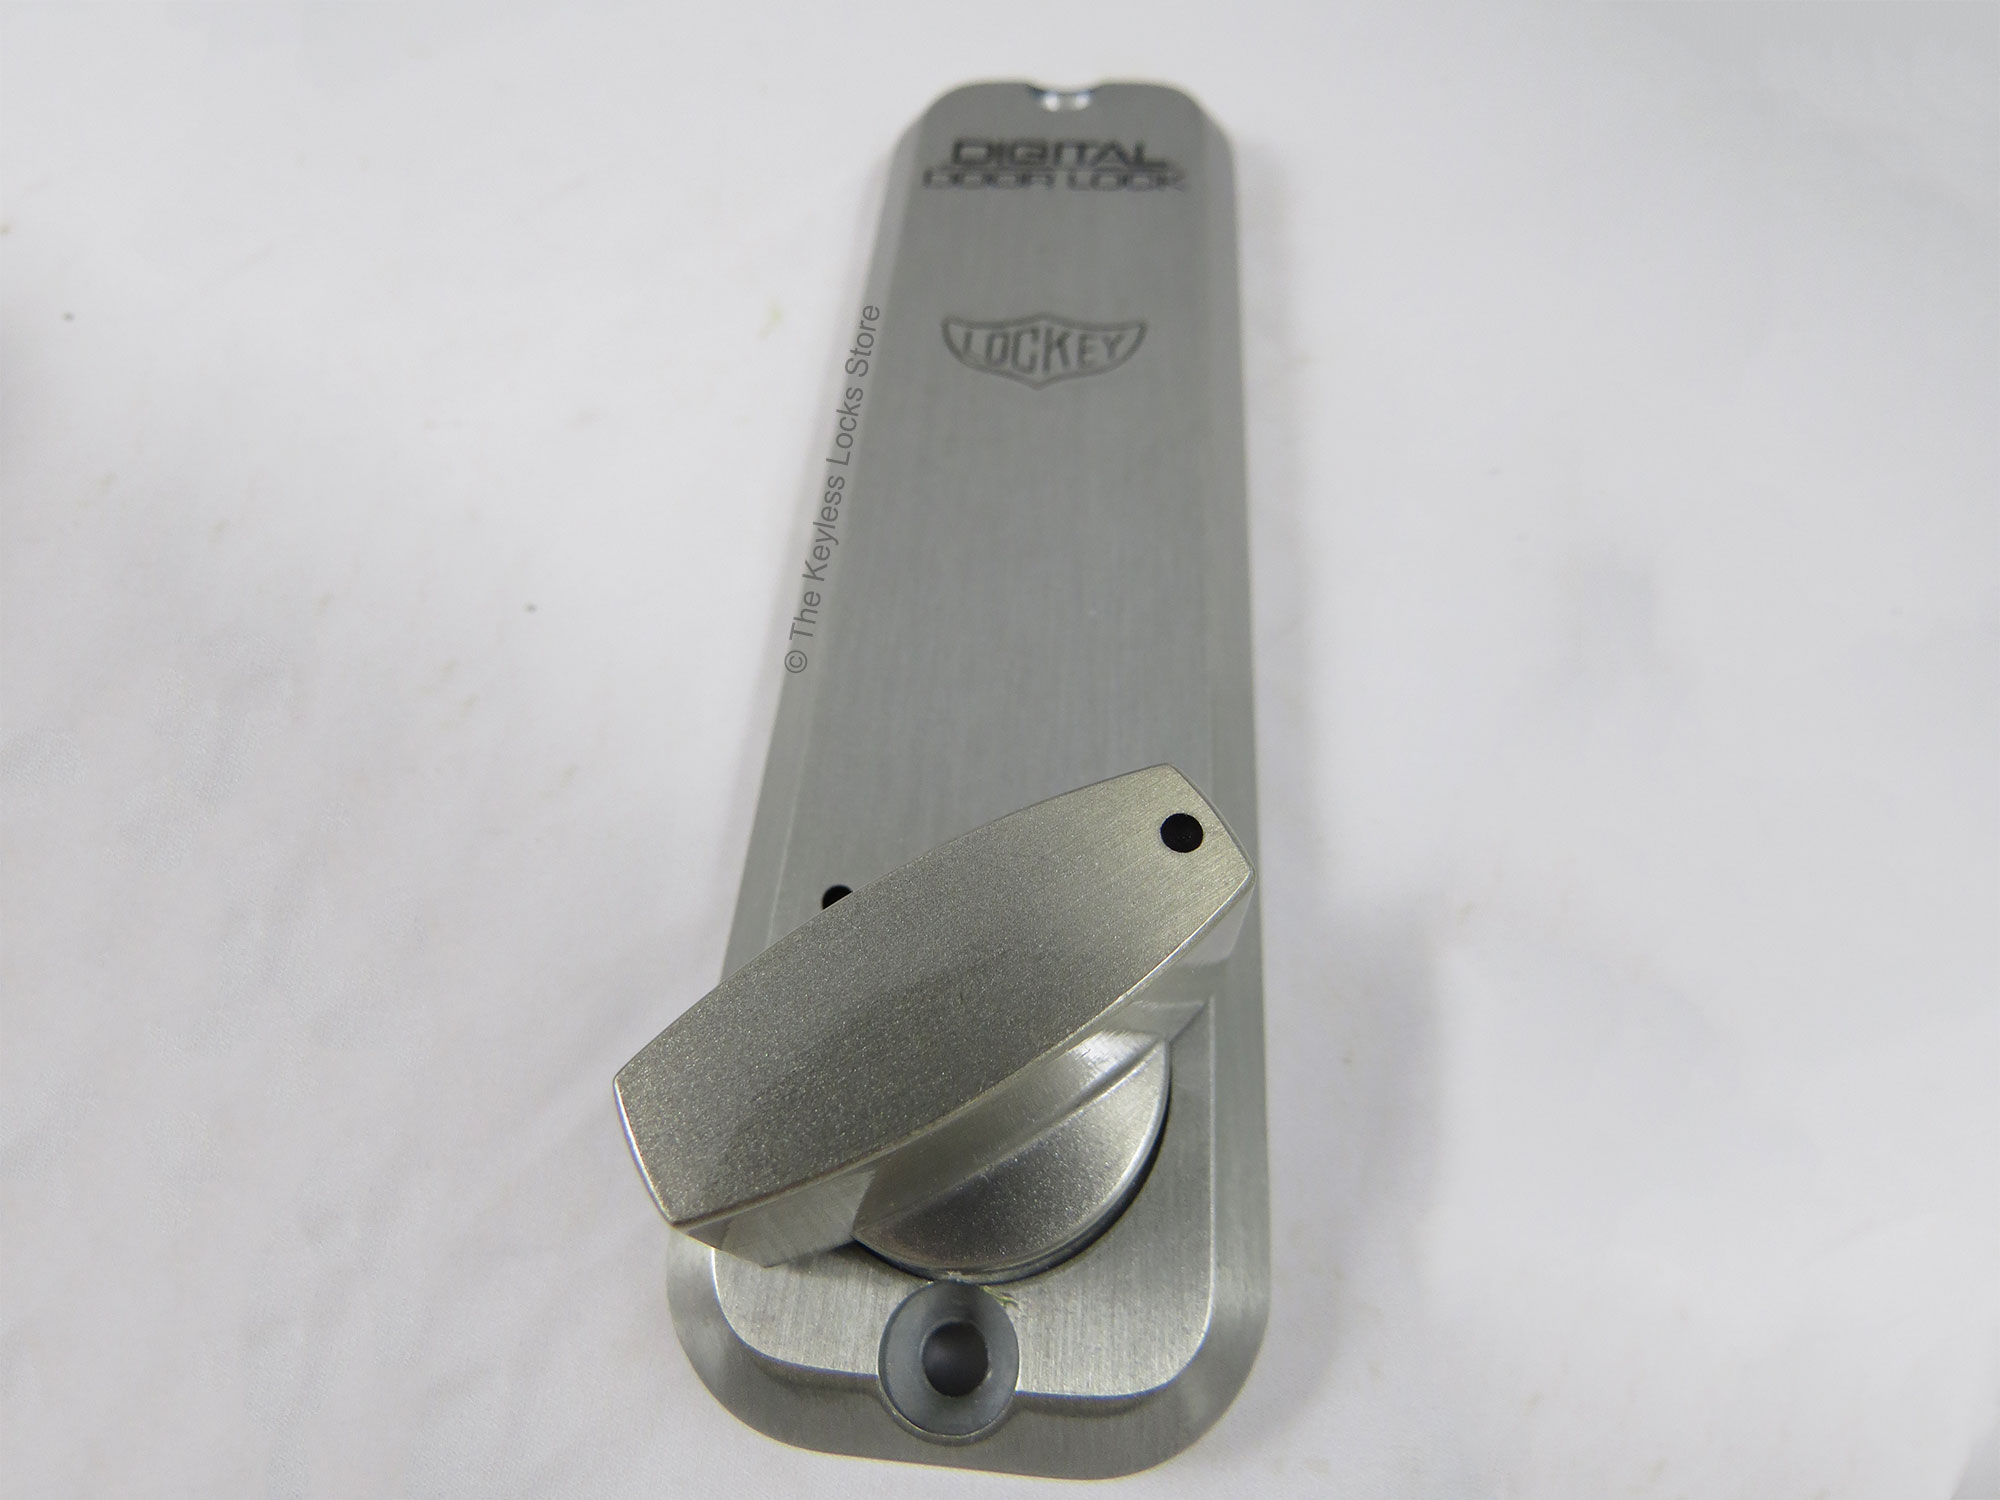 Lockey 2900 Narrow-Stile Knob-Handle Keypad Deadbolt Lock - Click Image to Close